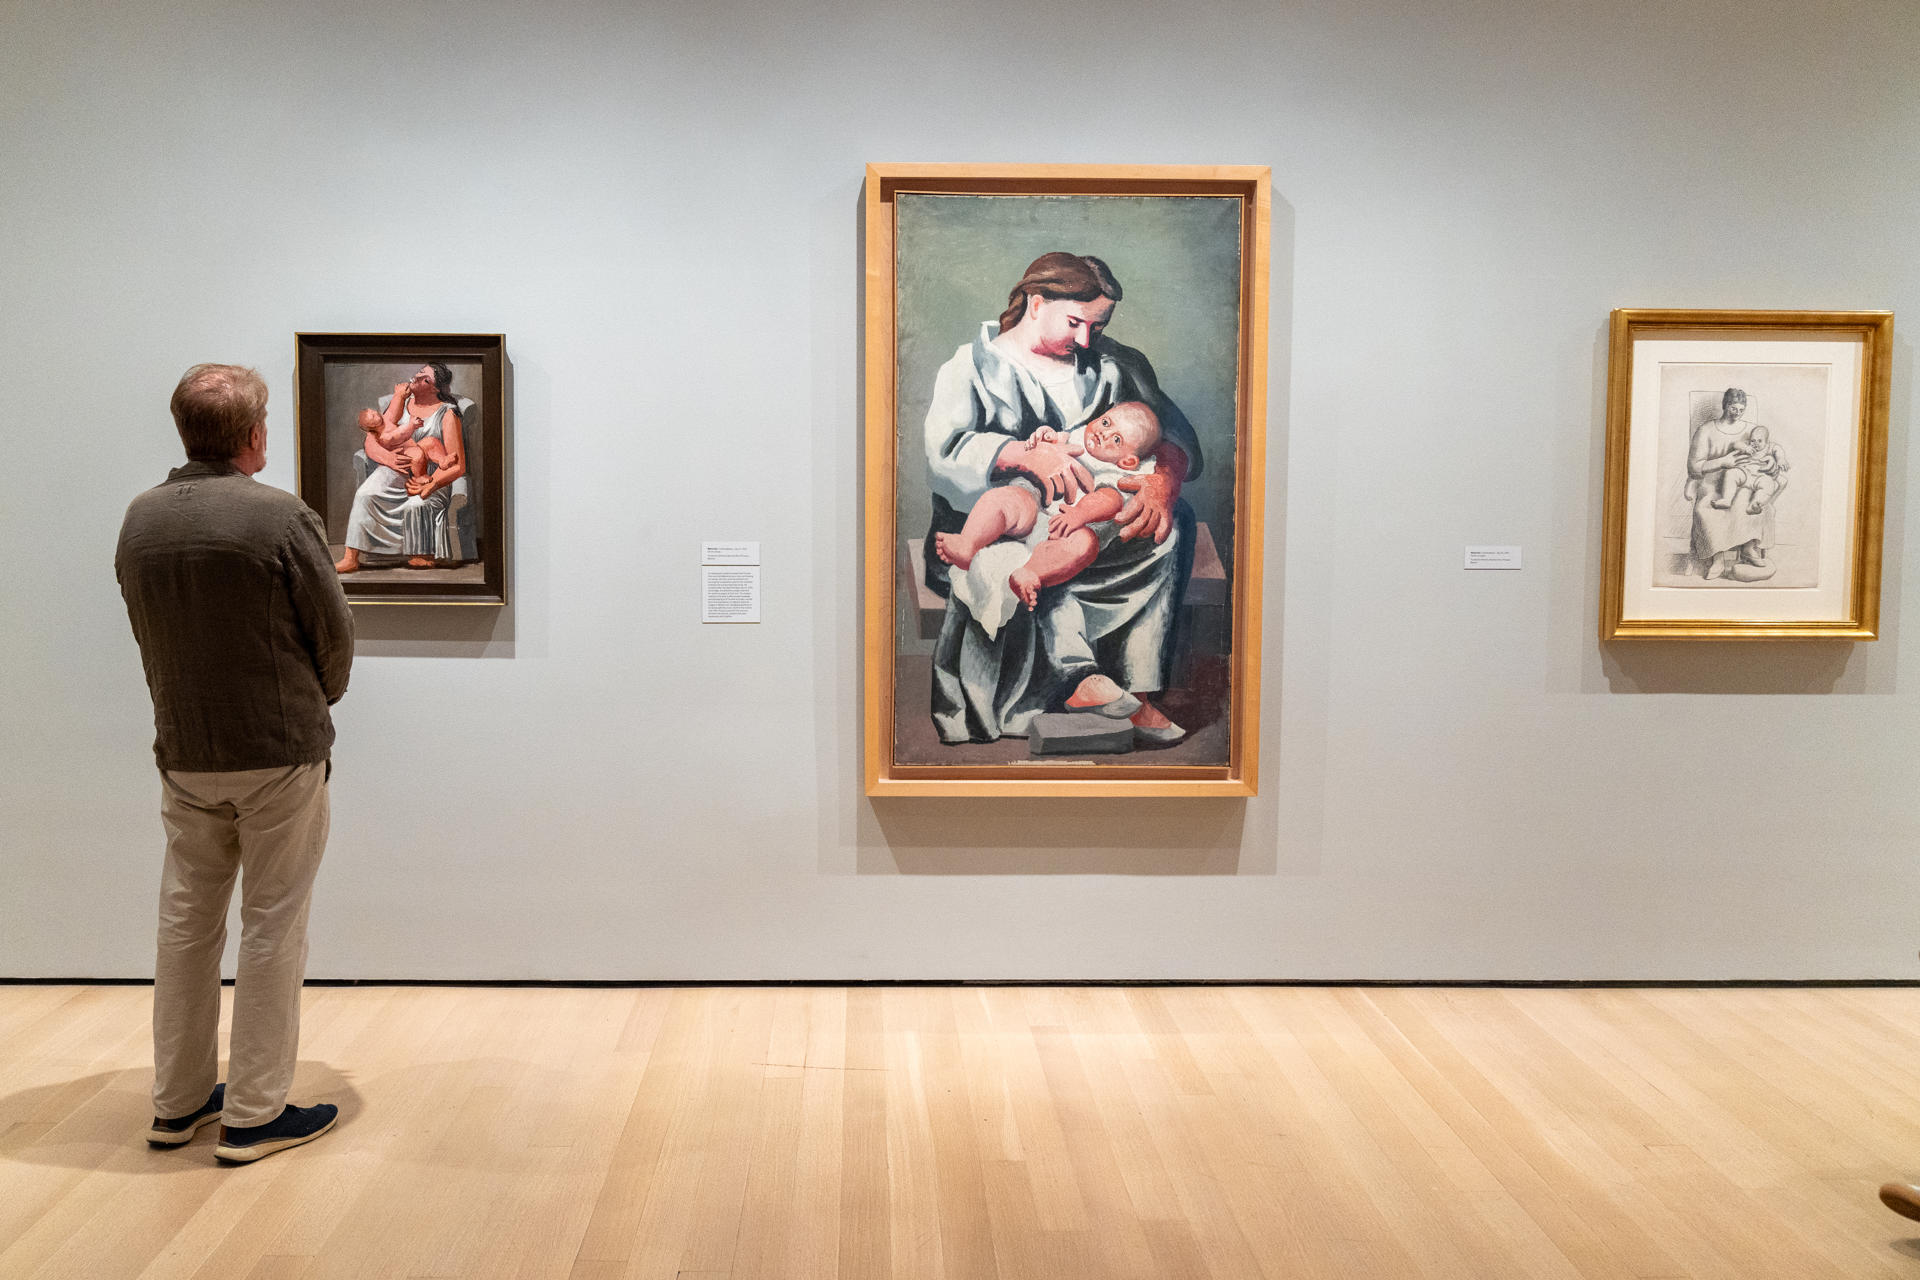 Visitantes observan obras expuestas en la muestra 'Picasso in Fontainebleau' del artista Pablo Picasso, en el Museo de Arte Moderno de Nueva York (MoMA), en Nueva York (Estados Unidos). EFE/Ángel Colmenares